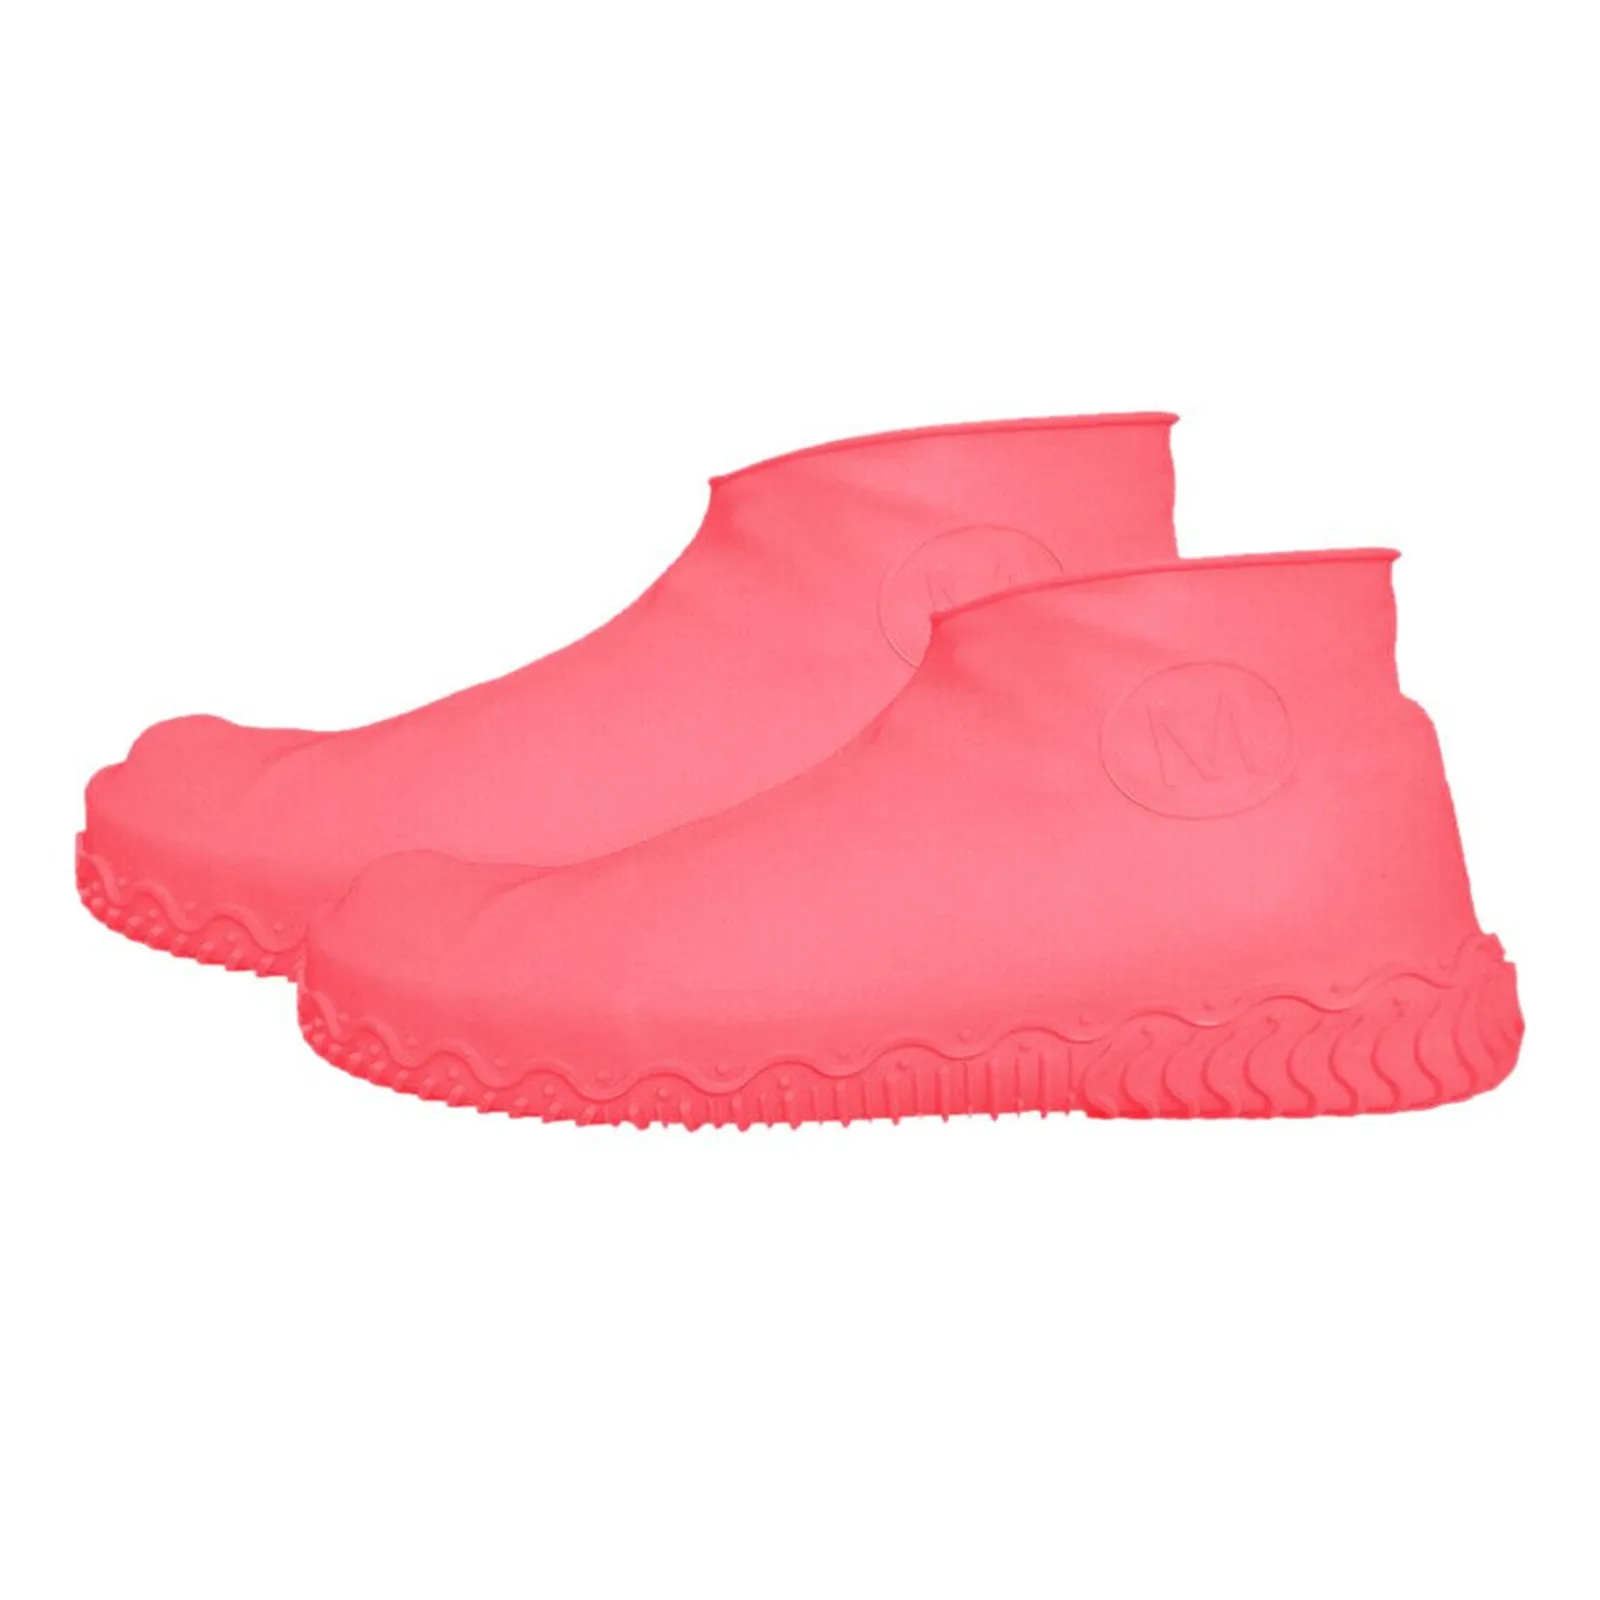 1000 Pcs Waterproof Plastic Shoe/Boot Cover Floor/Shoe Protector Indoor/Outdoor 